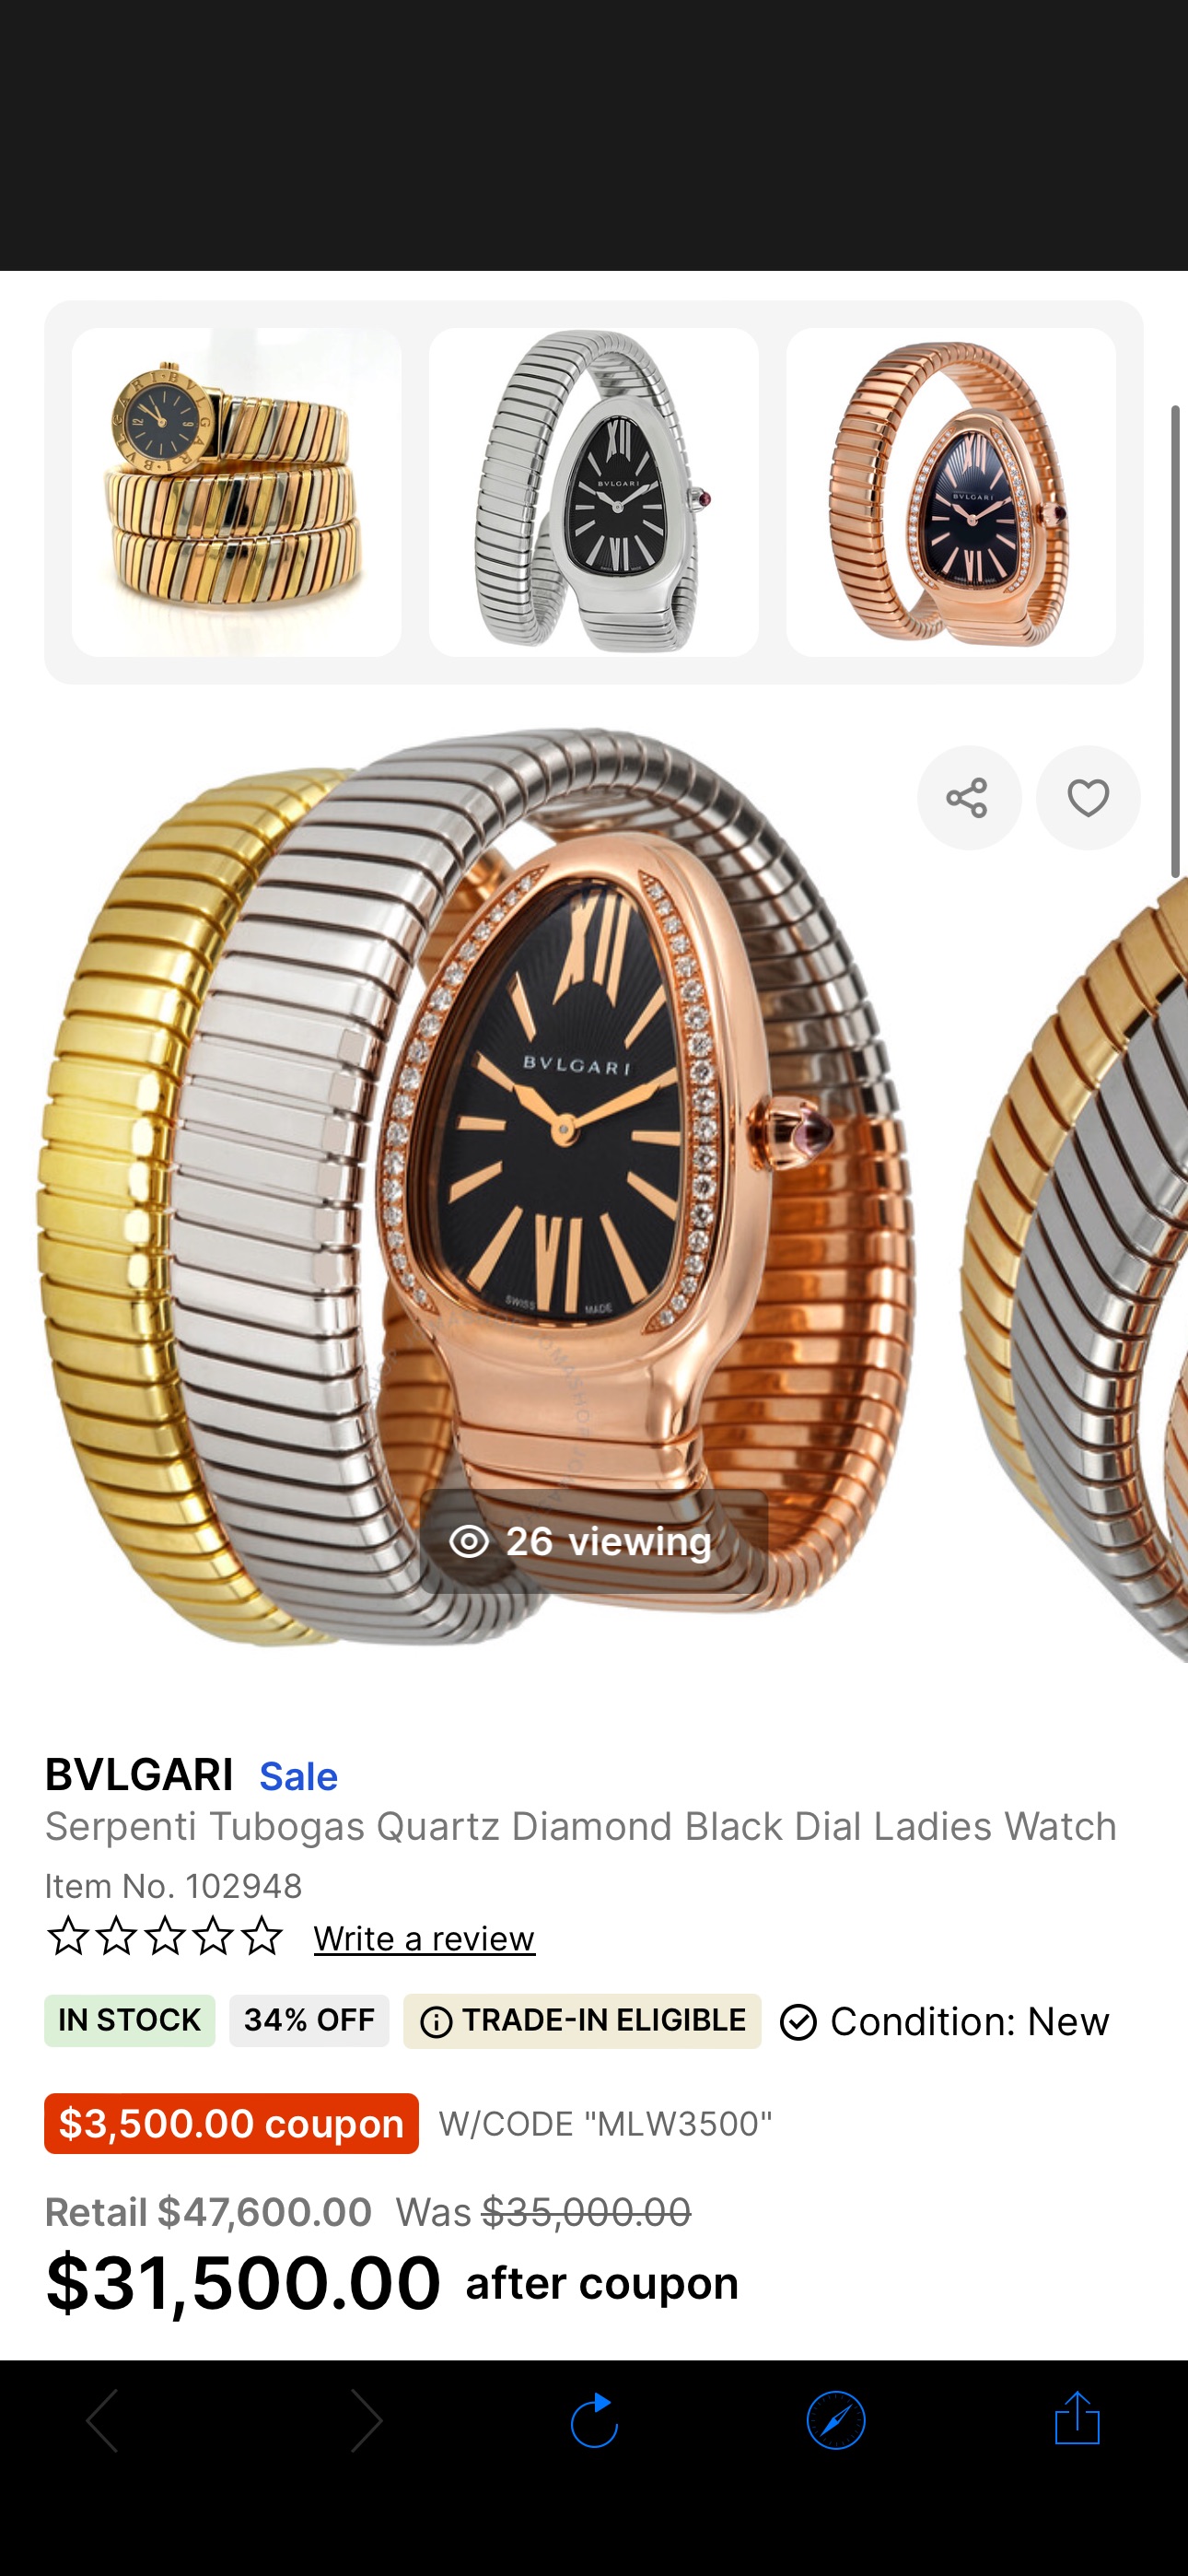 Bvlgari Serpenti Tubogas Quartz Diamond Black Dial Ladies Watch 102948 - Watches, Serpenti Tubogas - Jomashop